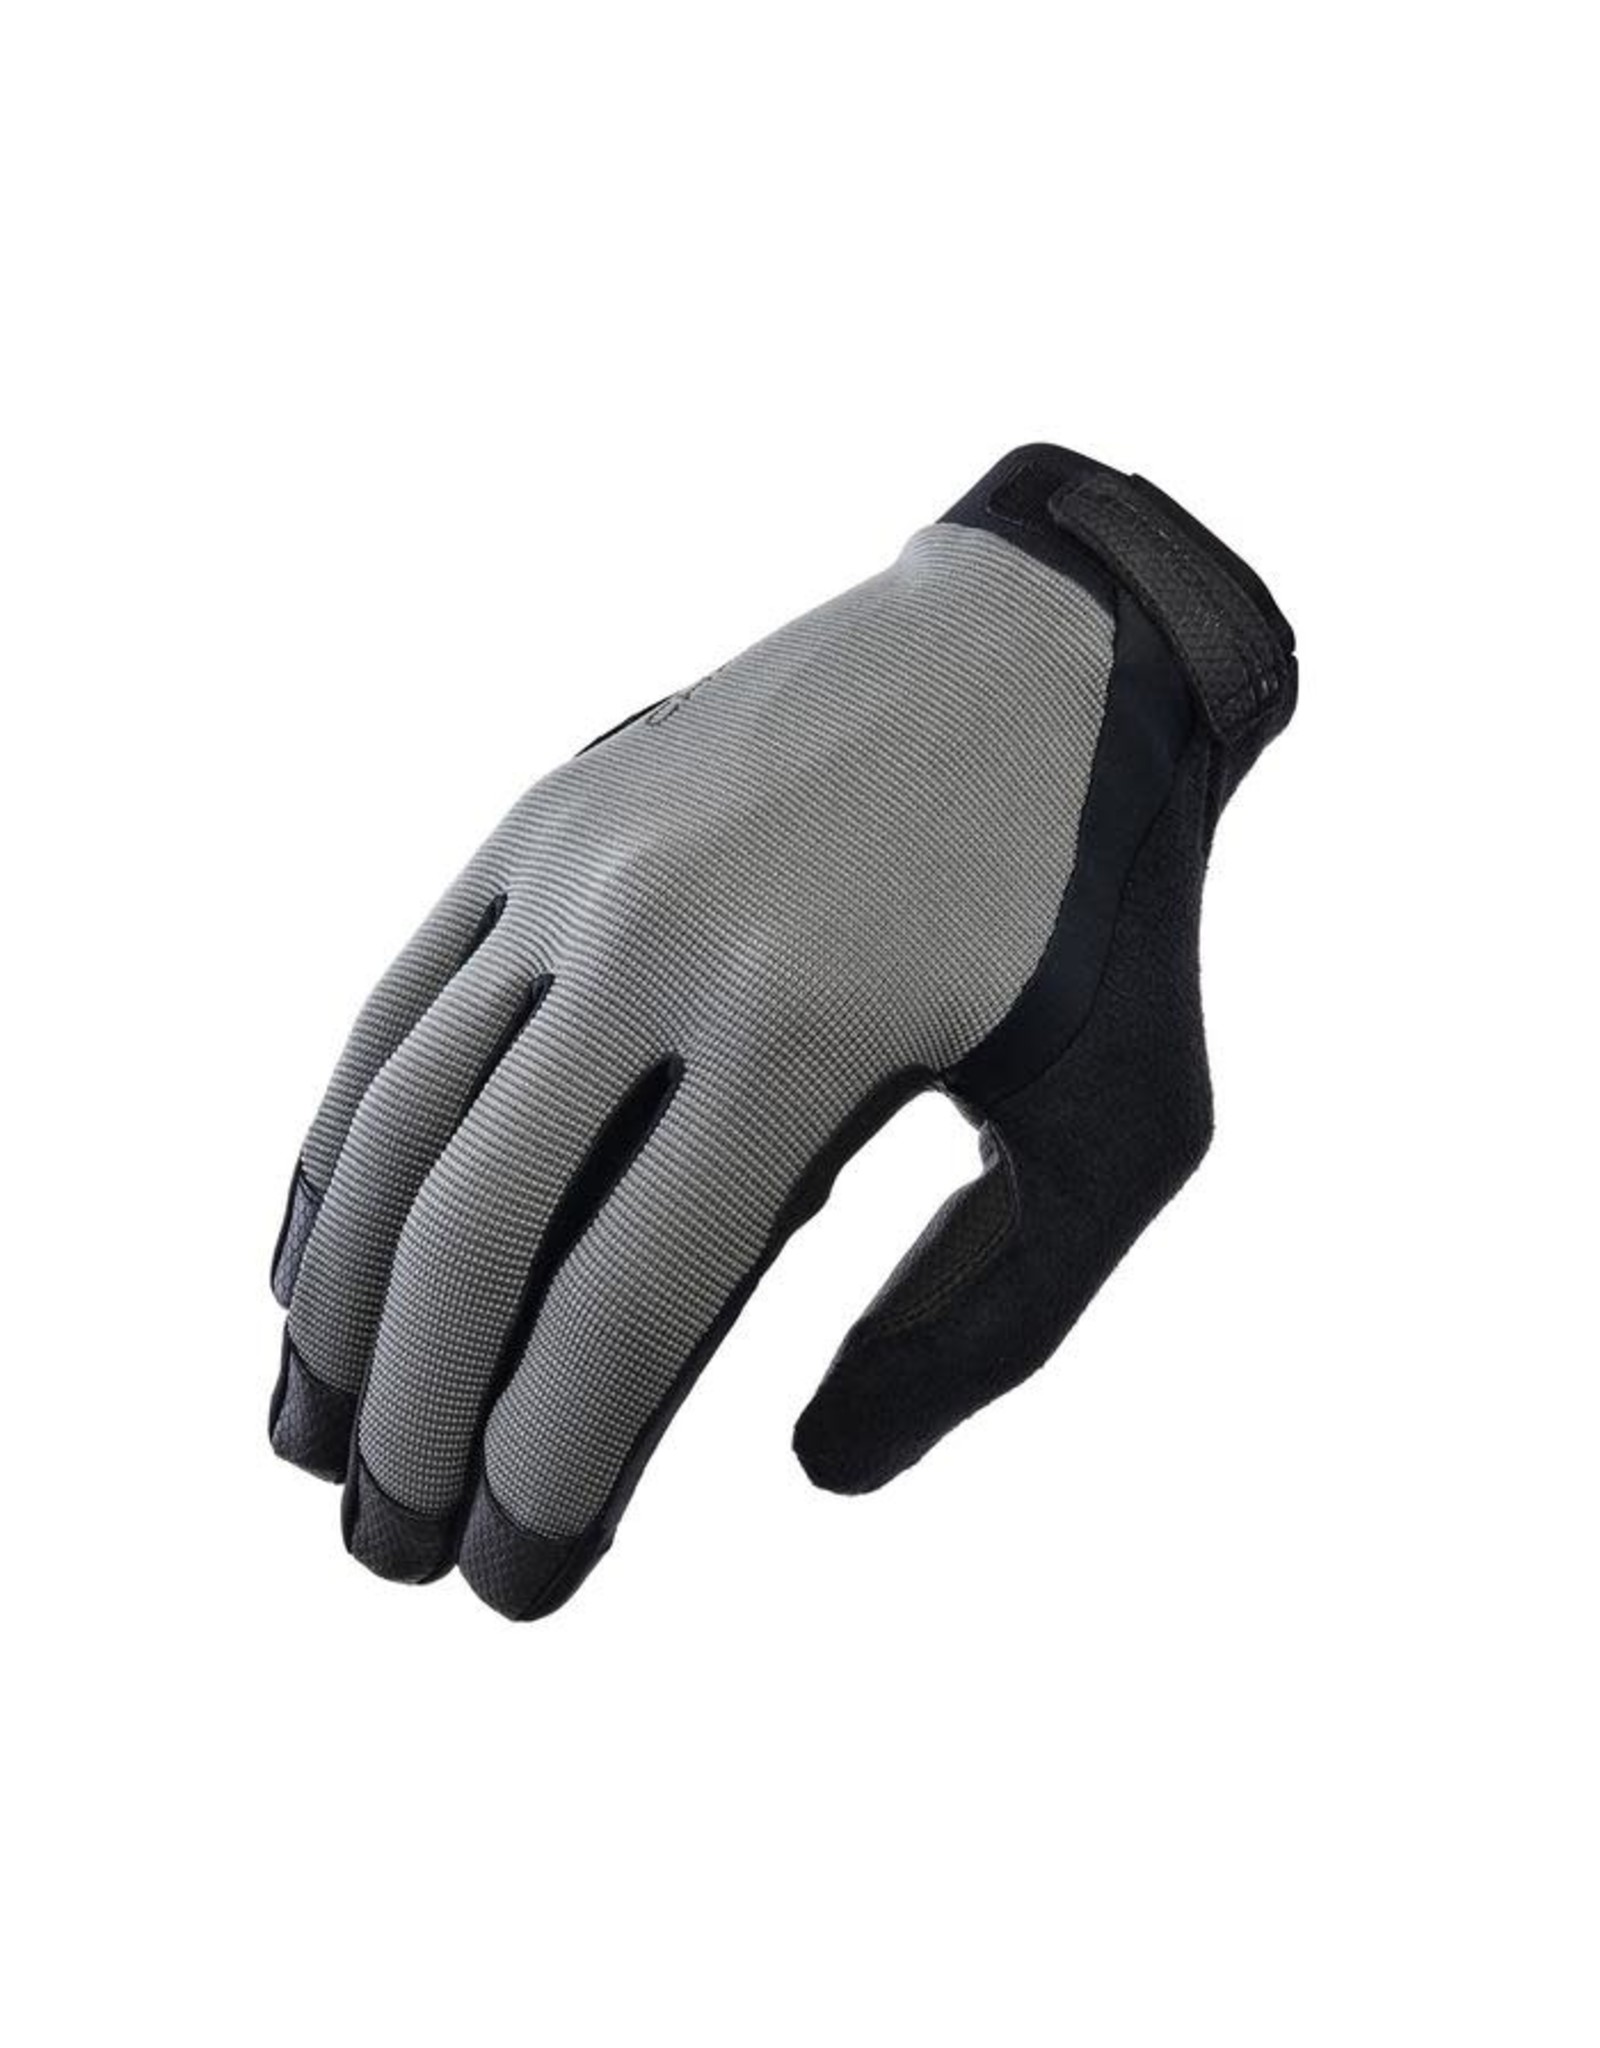 Chromag Gloves Chromag Tact